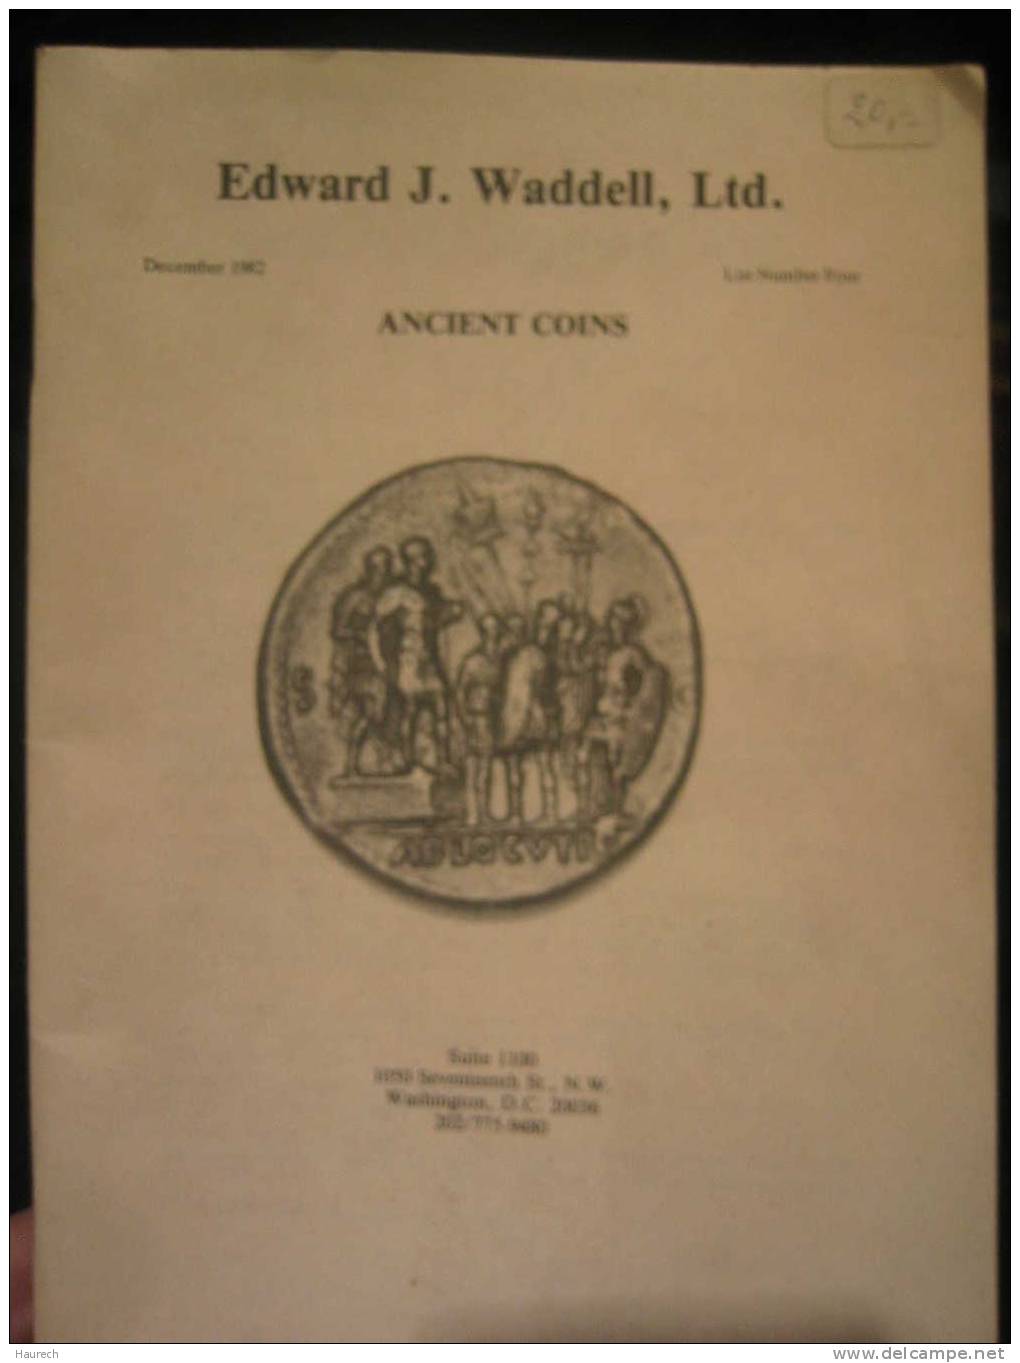 Ancient Coins, Edward J. Waddell, Décembre 1982 - Literatur & Software